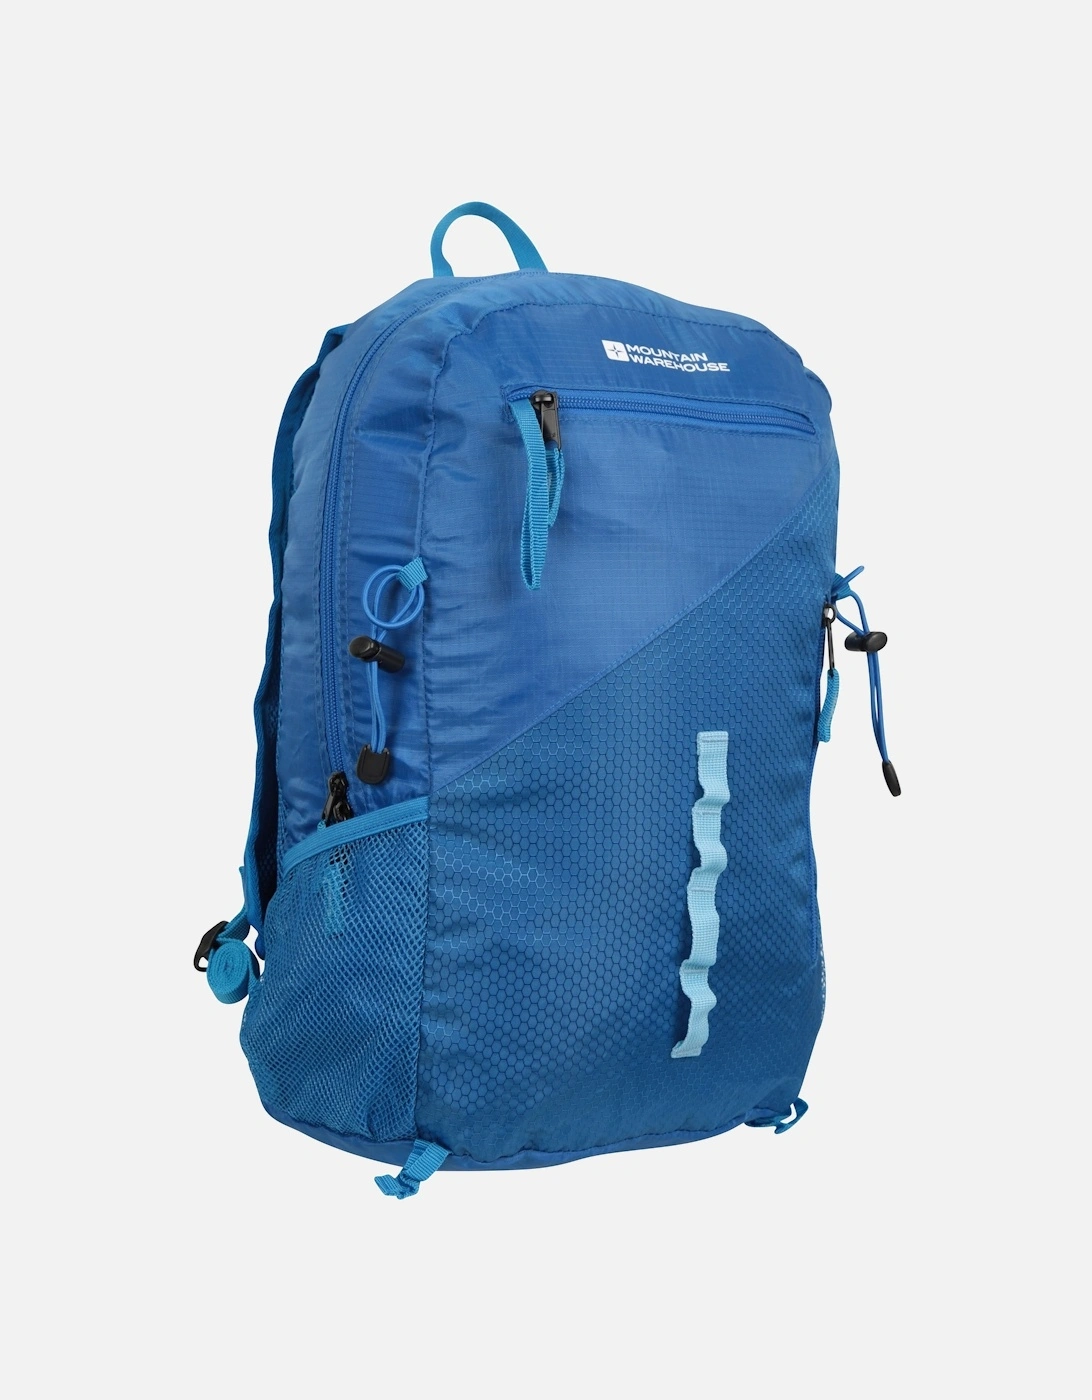 Malvern Packaway Backpack